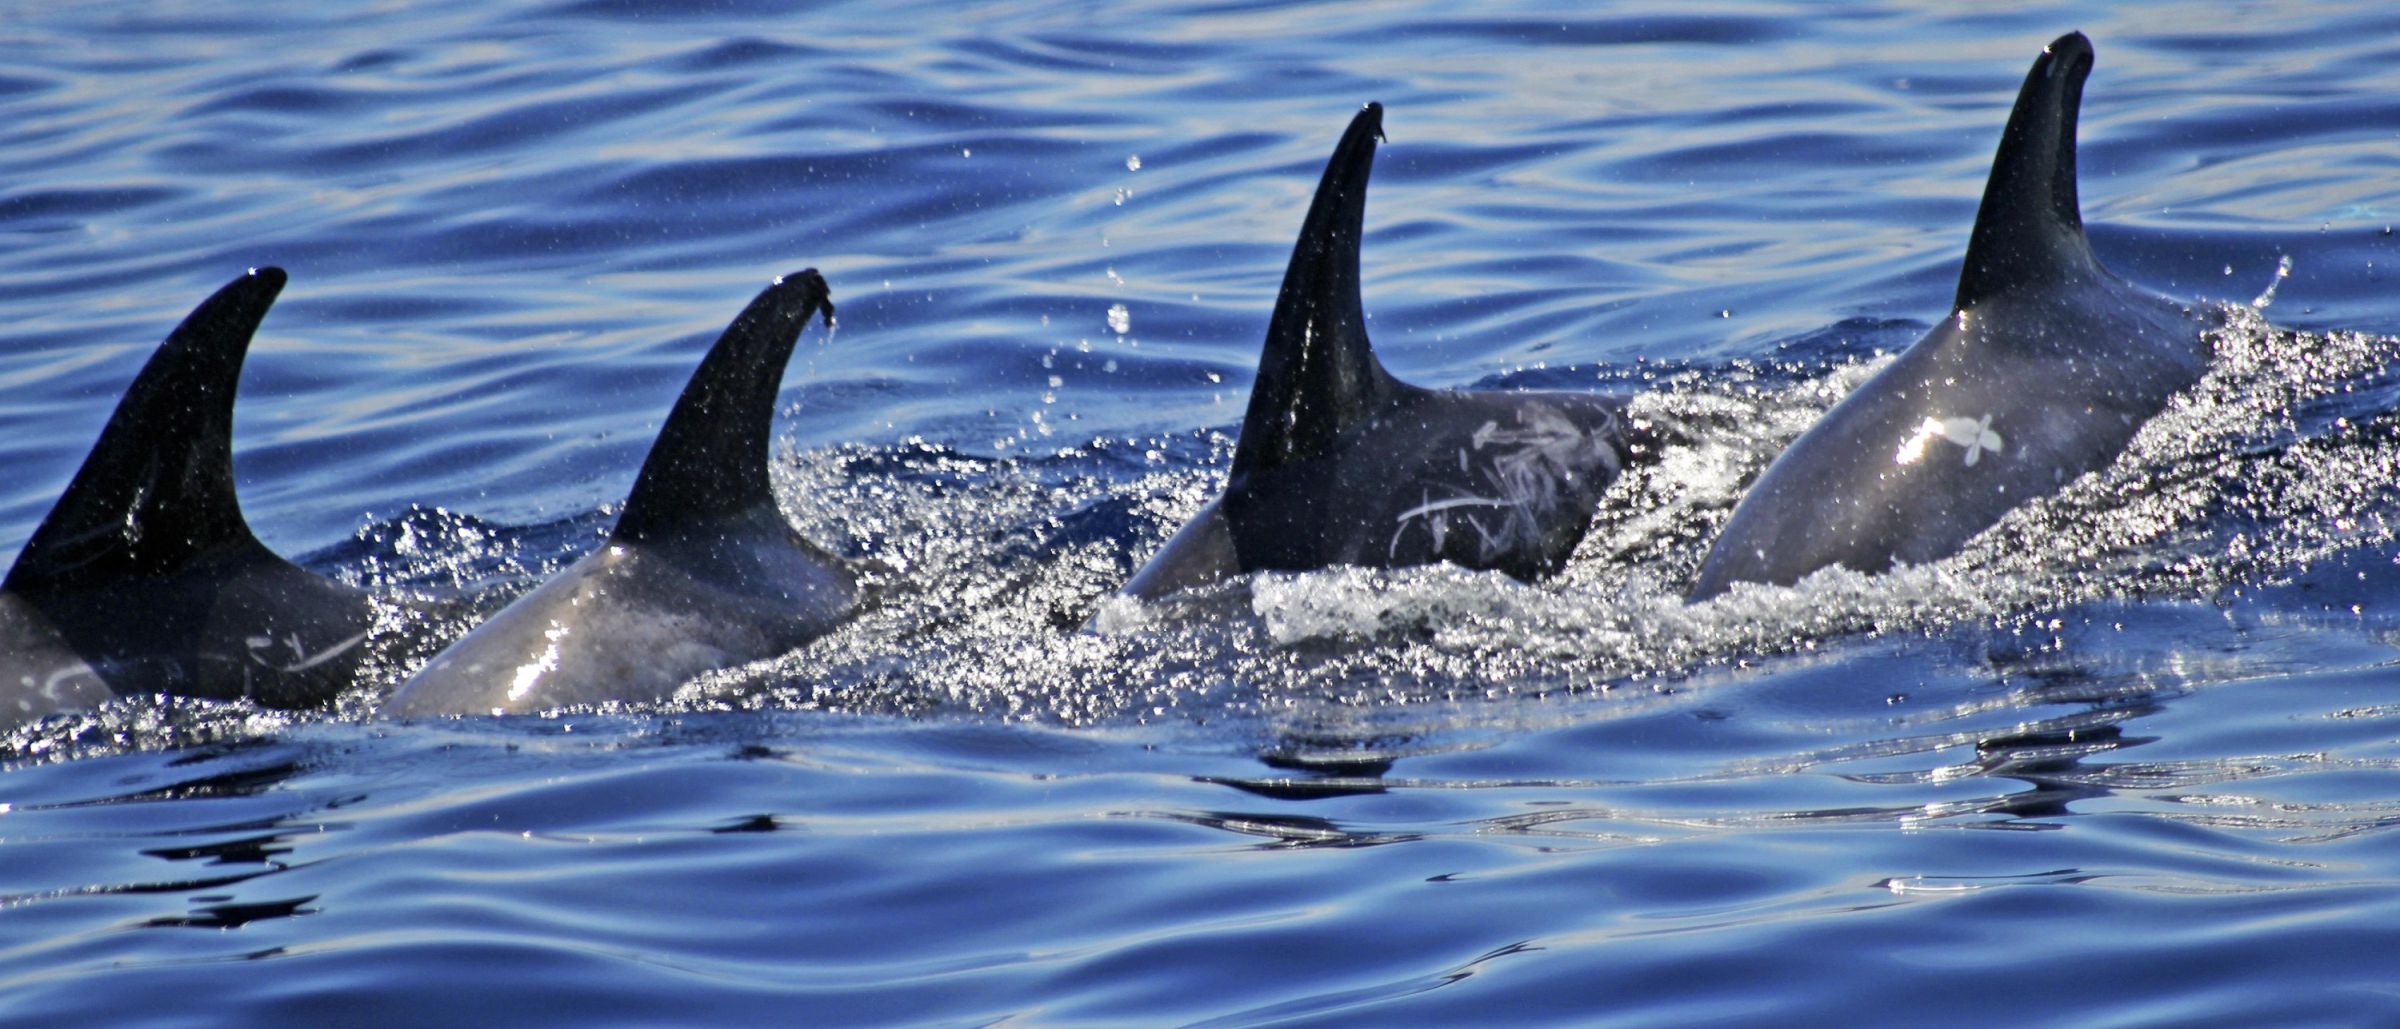 Rundkopfdelfine in Gruppe